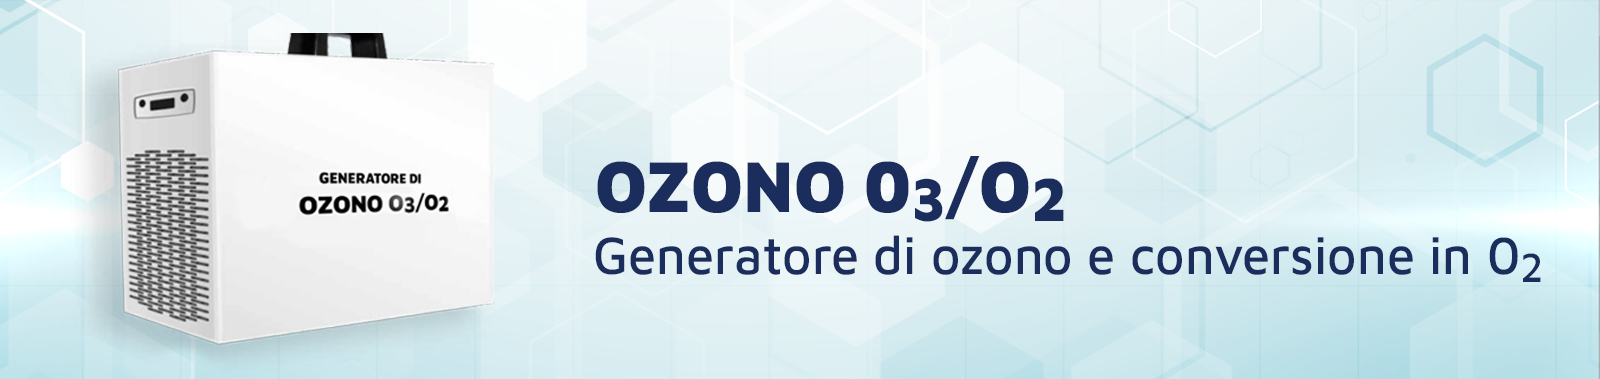 ozonoO302